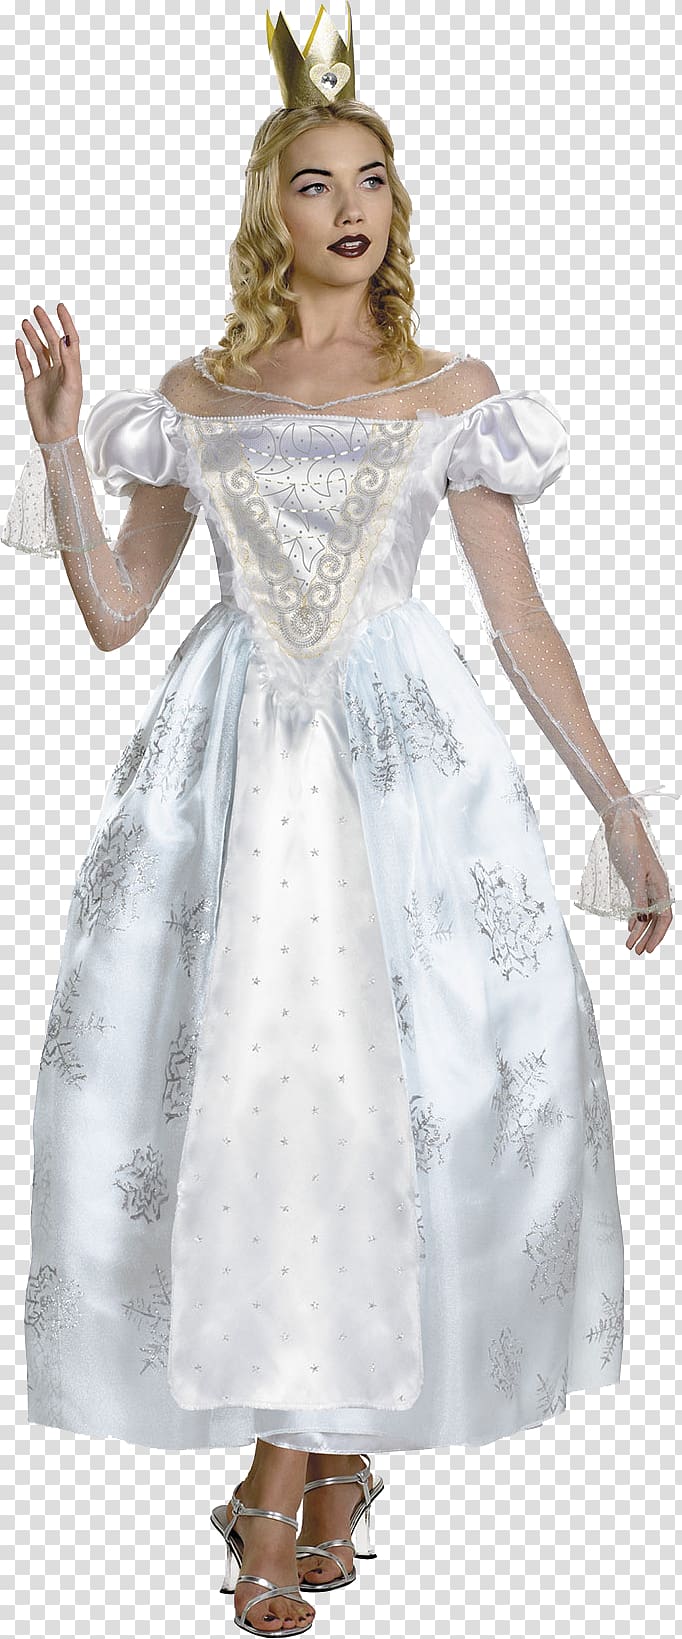 White Queen Alice in Wonderland Red Queen Queen of Hearts Costume, queen transparent background PNG clipart